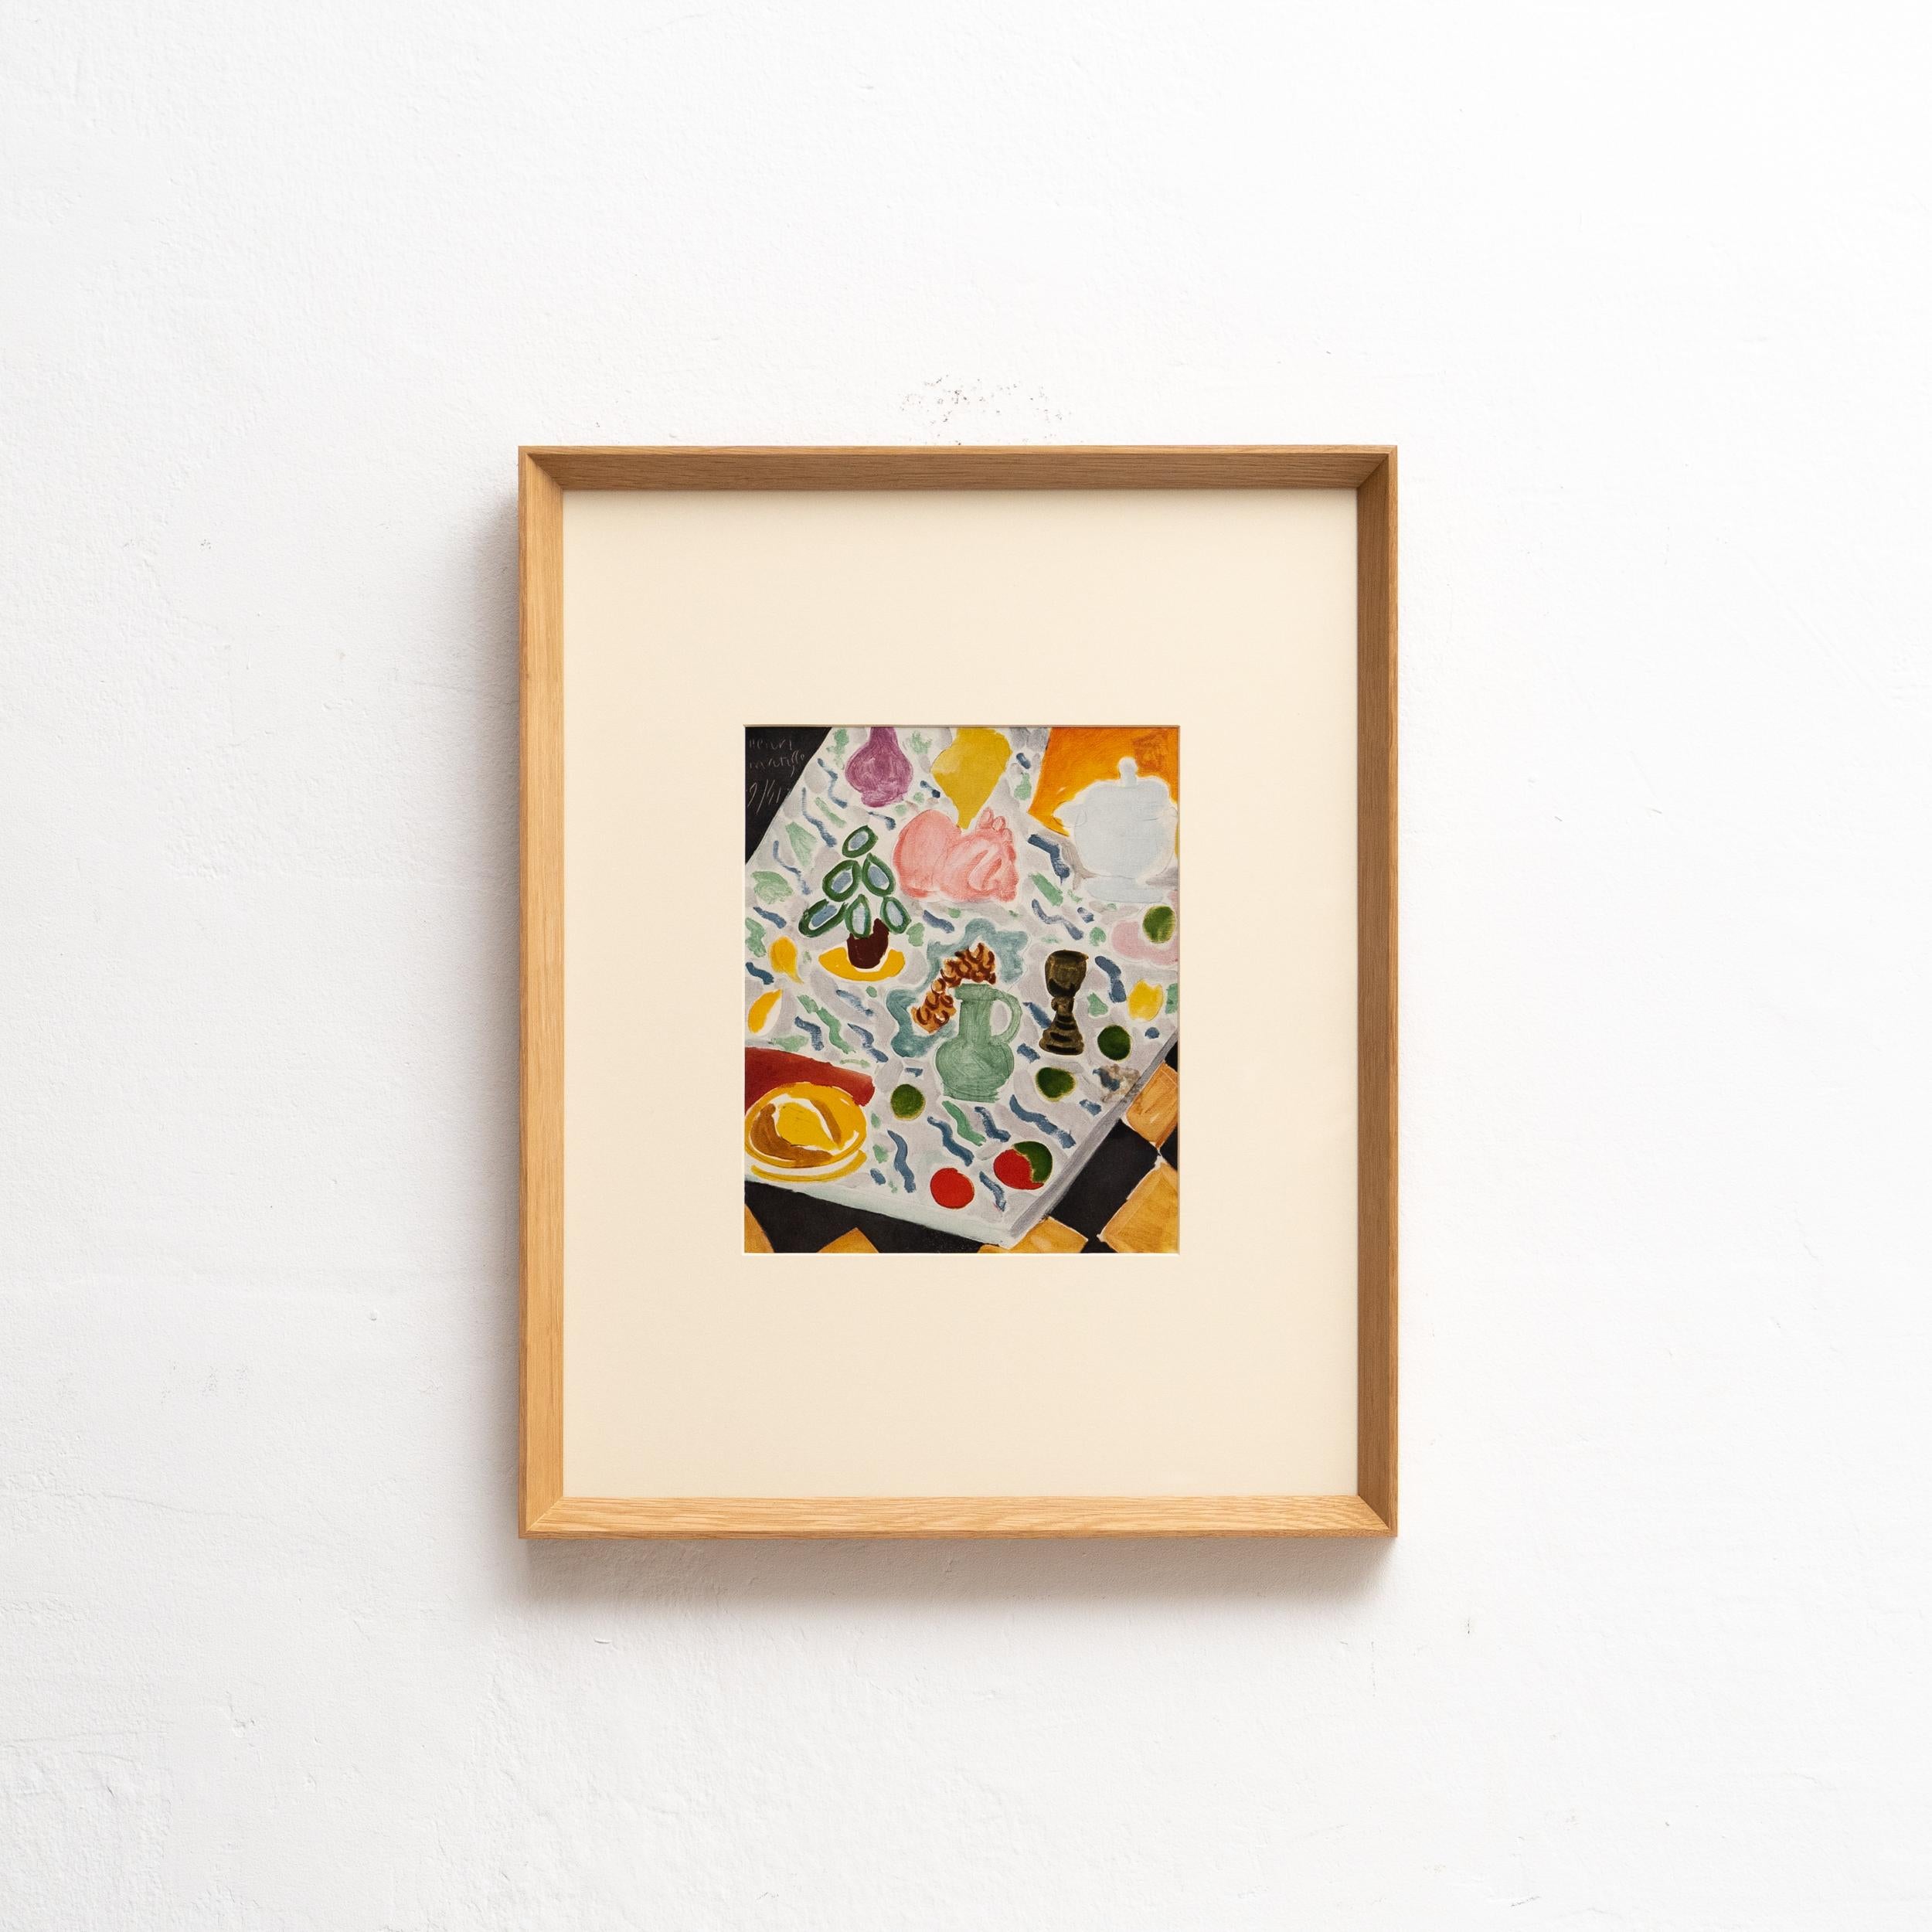 Adéntrate en el mundo de Henri Matisse con esta rara litografía en color, testimonio del incomparable uso del color y la fluidez del dibujo del artista. Publicada en 1943 por Editions du Chene, París (Francia), esta exquisita obra capta la esencia